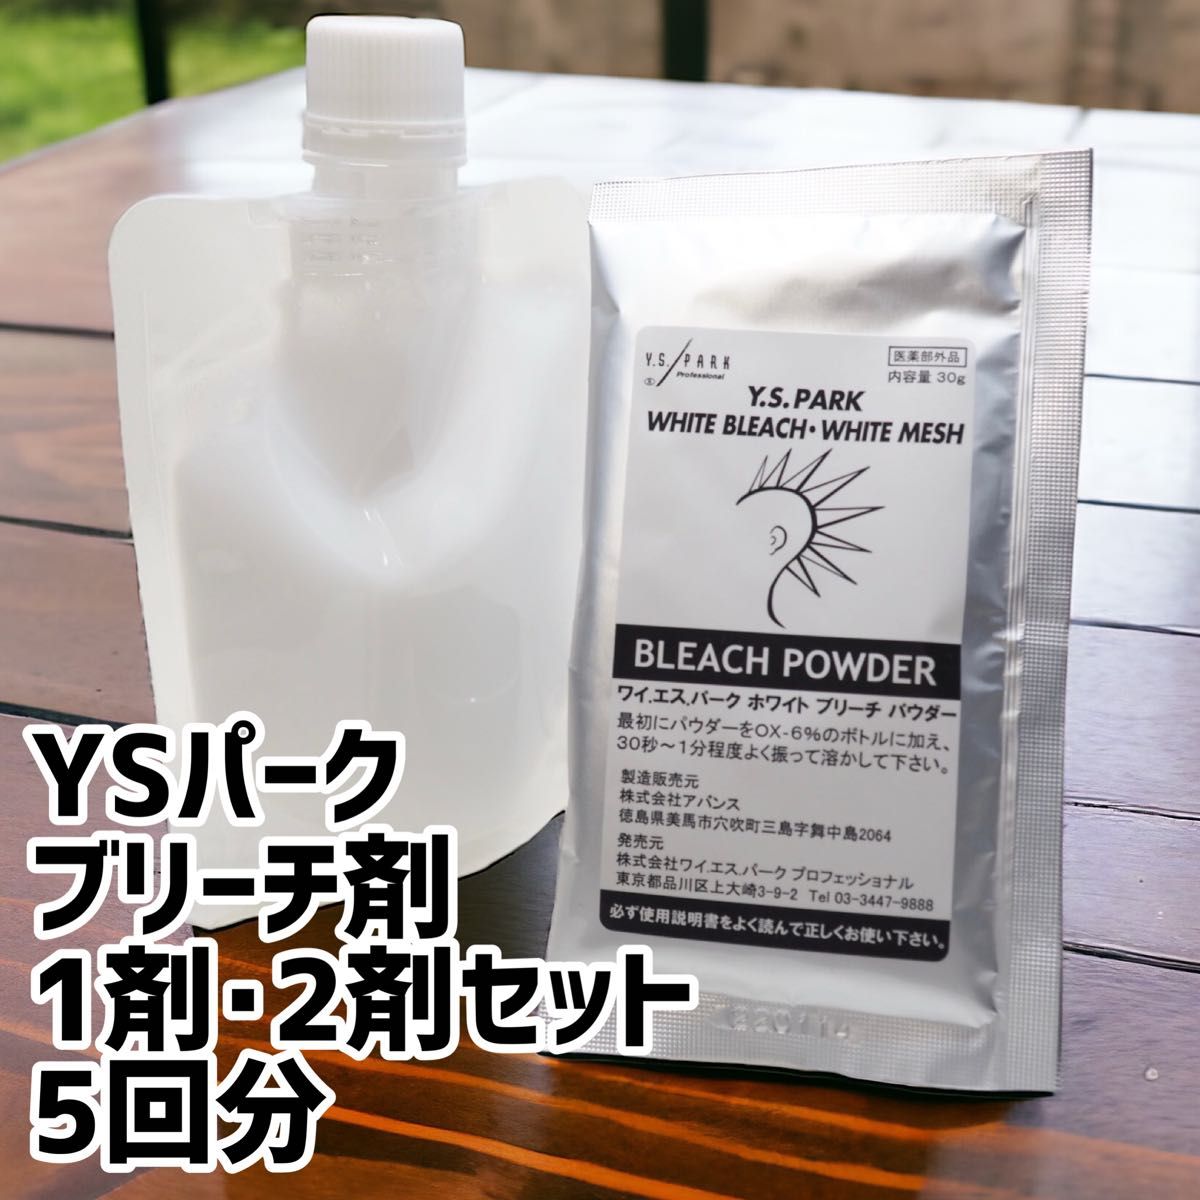 Y.S.PARKホワイトブリーチ5袋+サービス2剤セット